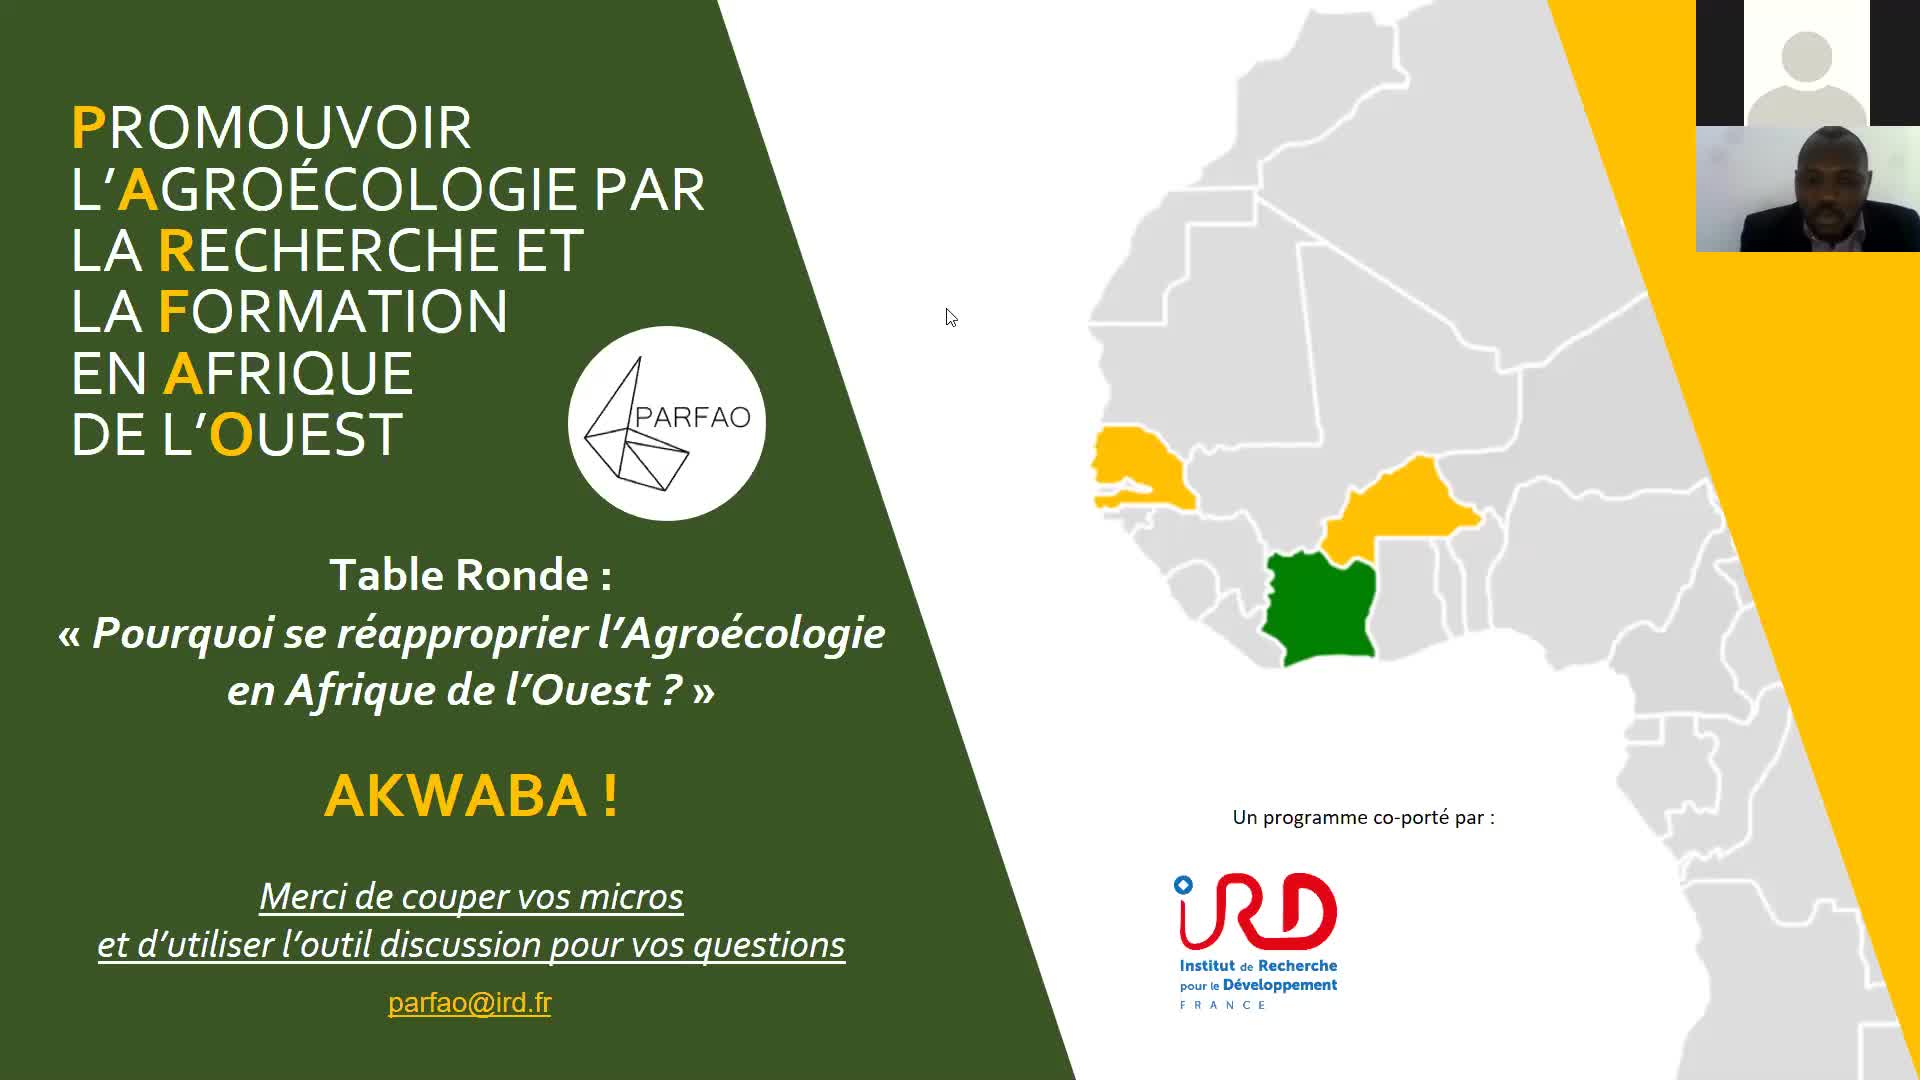 Pourquoi se réapproprier l'Agroécologie en Afrique de l'Ouest?
Table ronde agroécologie PARFAO